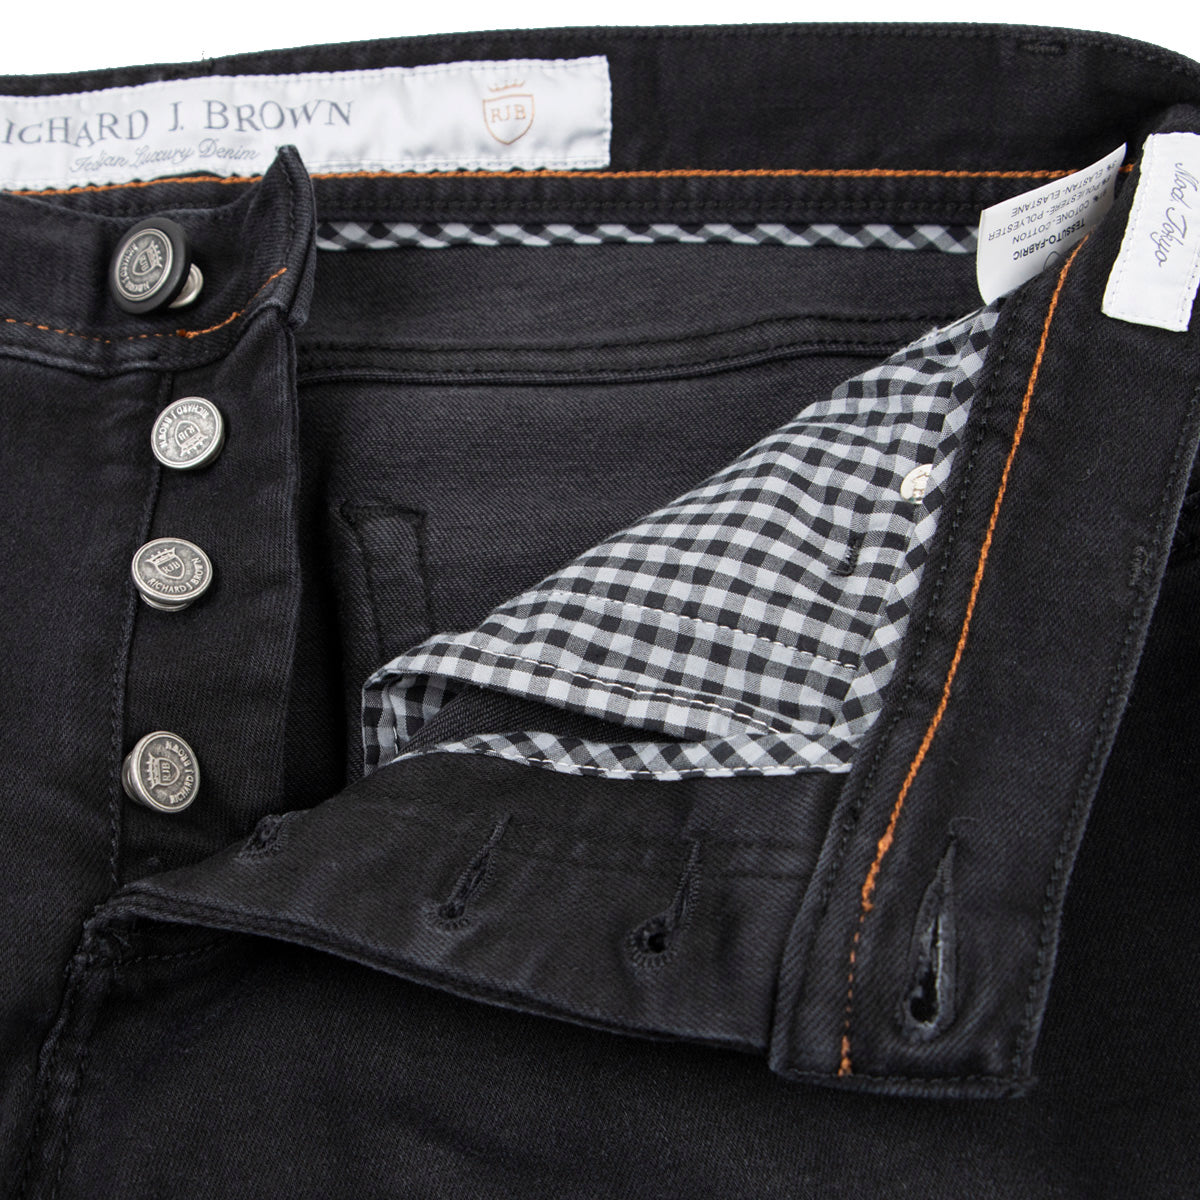 Washed Black Denim 'Tokyo' Slim Fit Jeans  Richard J Brown   